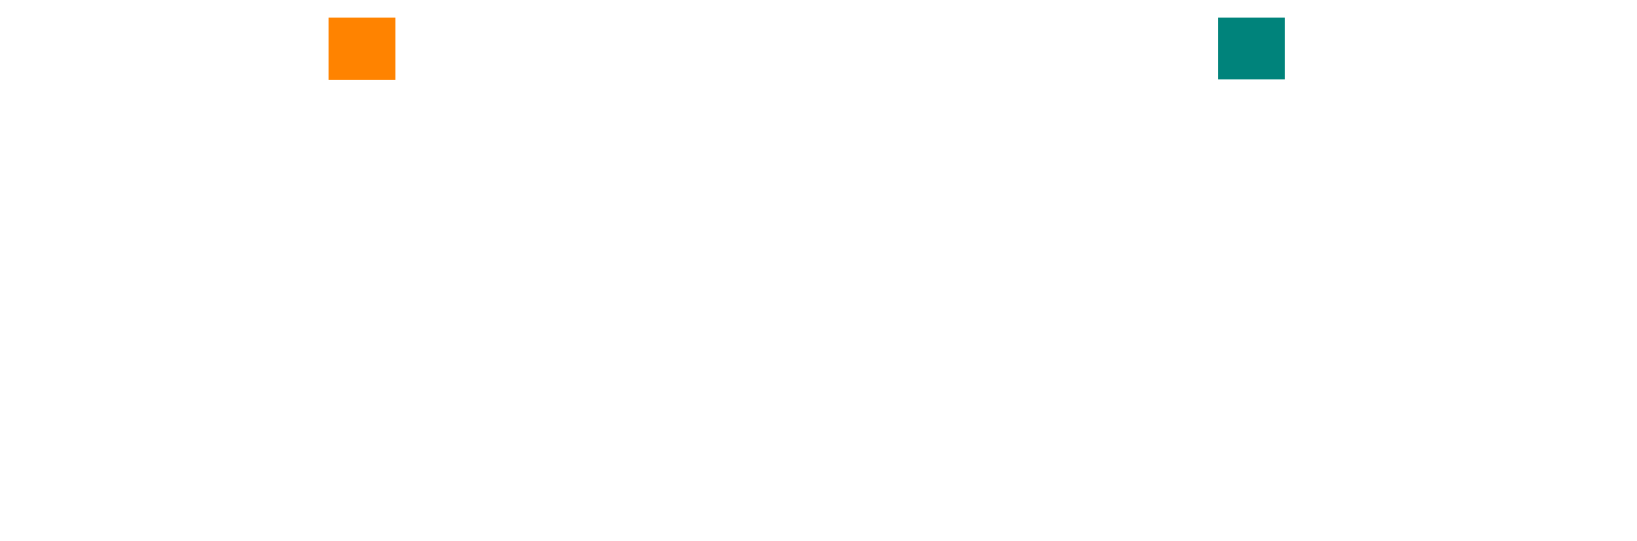 Kidpik logo large for dark backgrounds (transparent PNG)